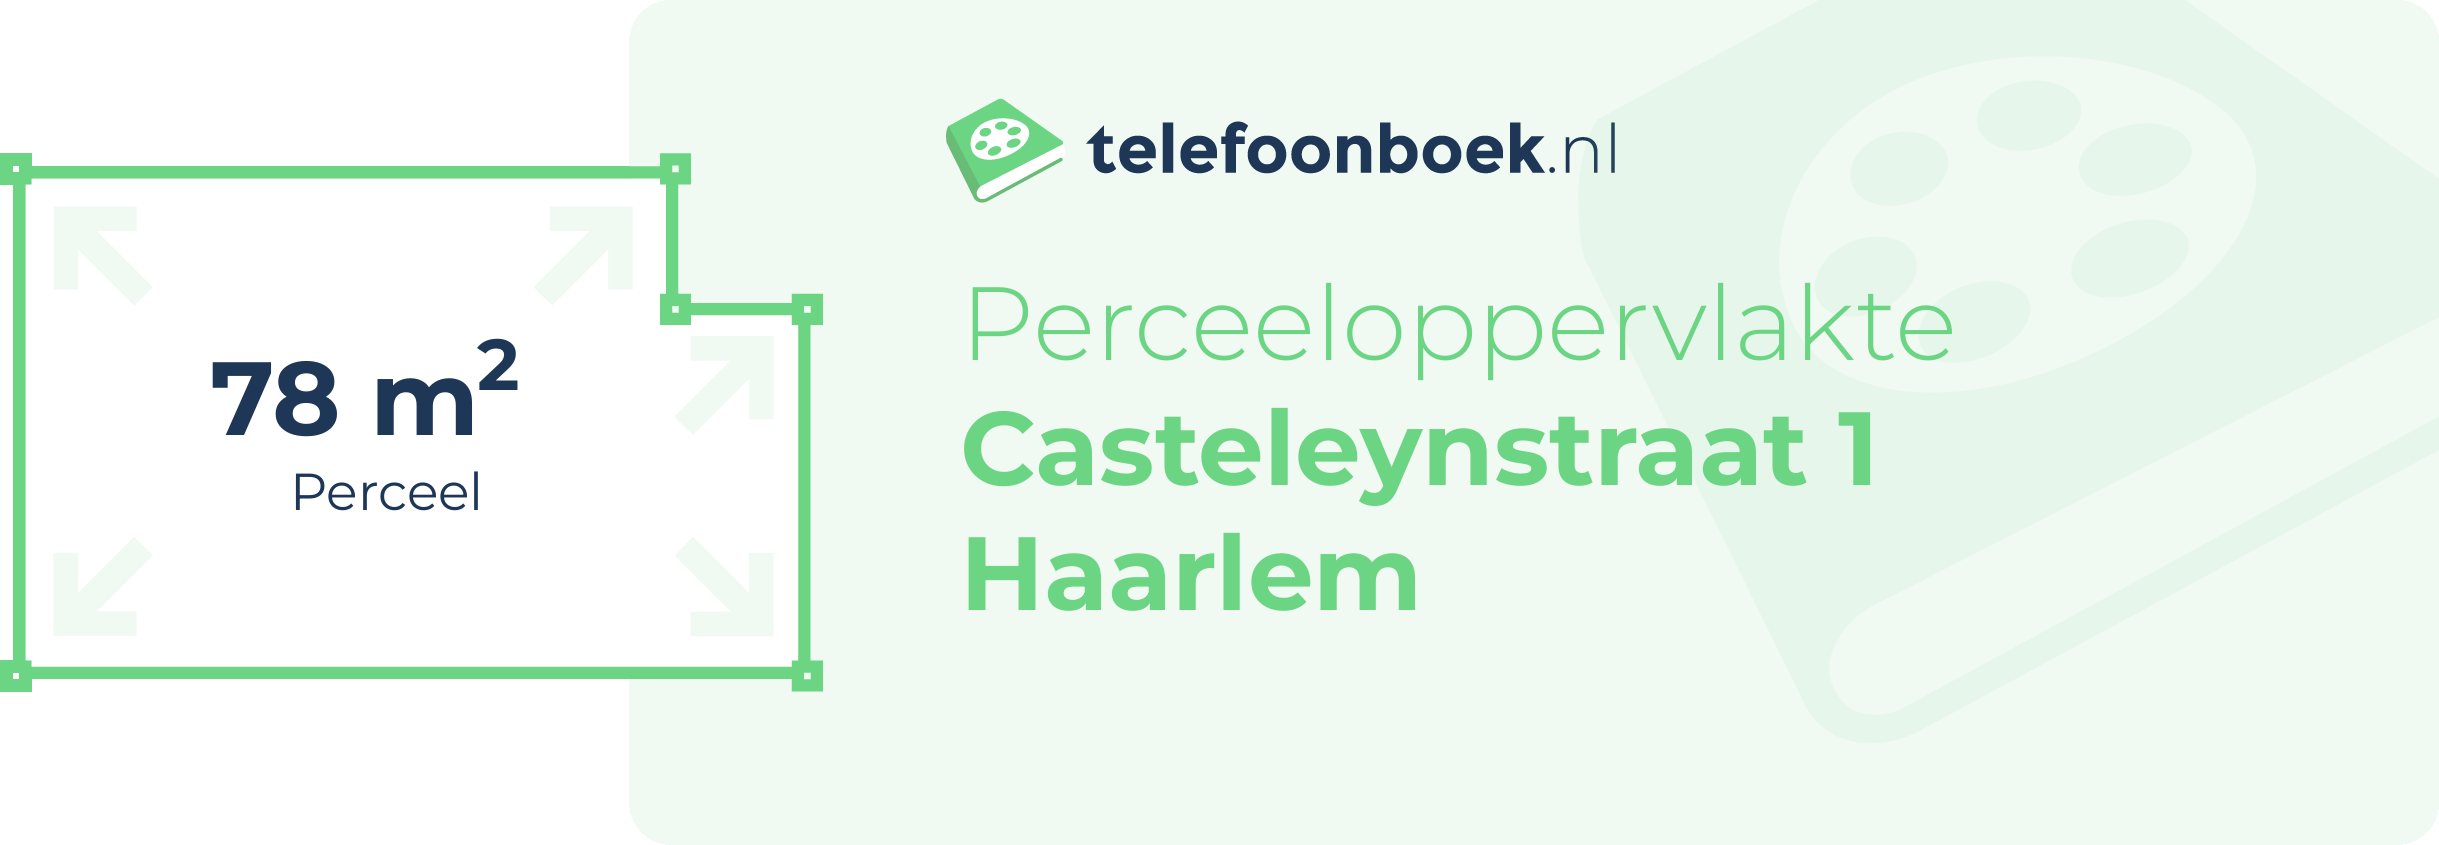 Perceeloppervlakte Casteleynstraat 1 Haarlem